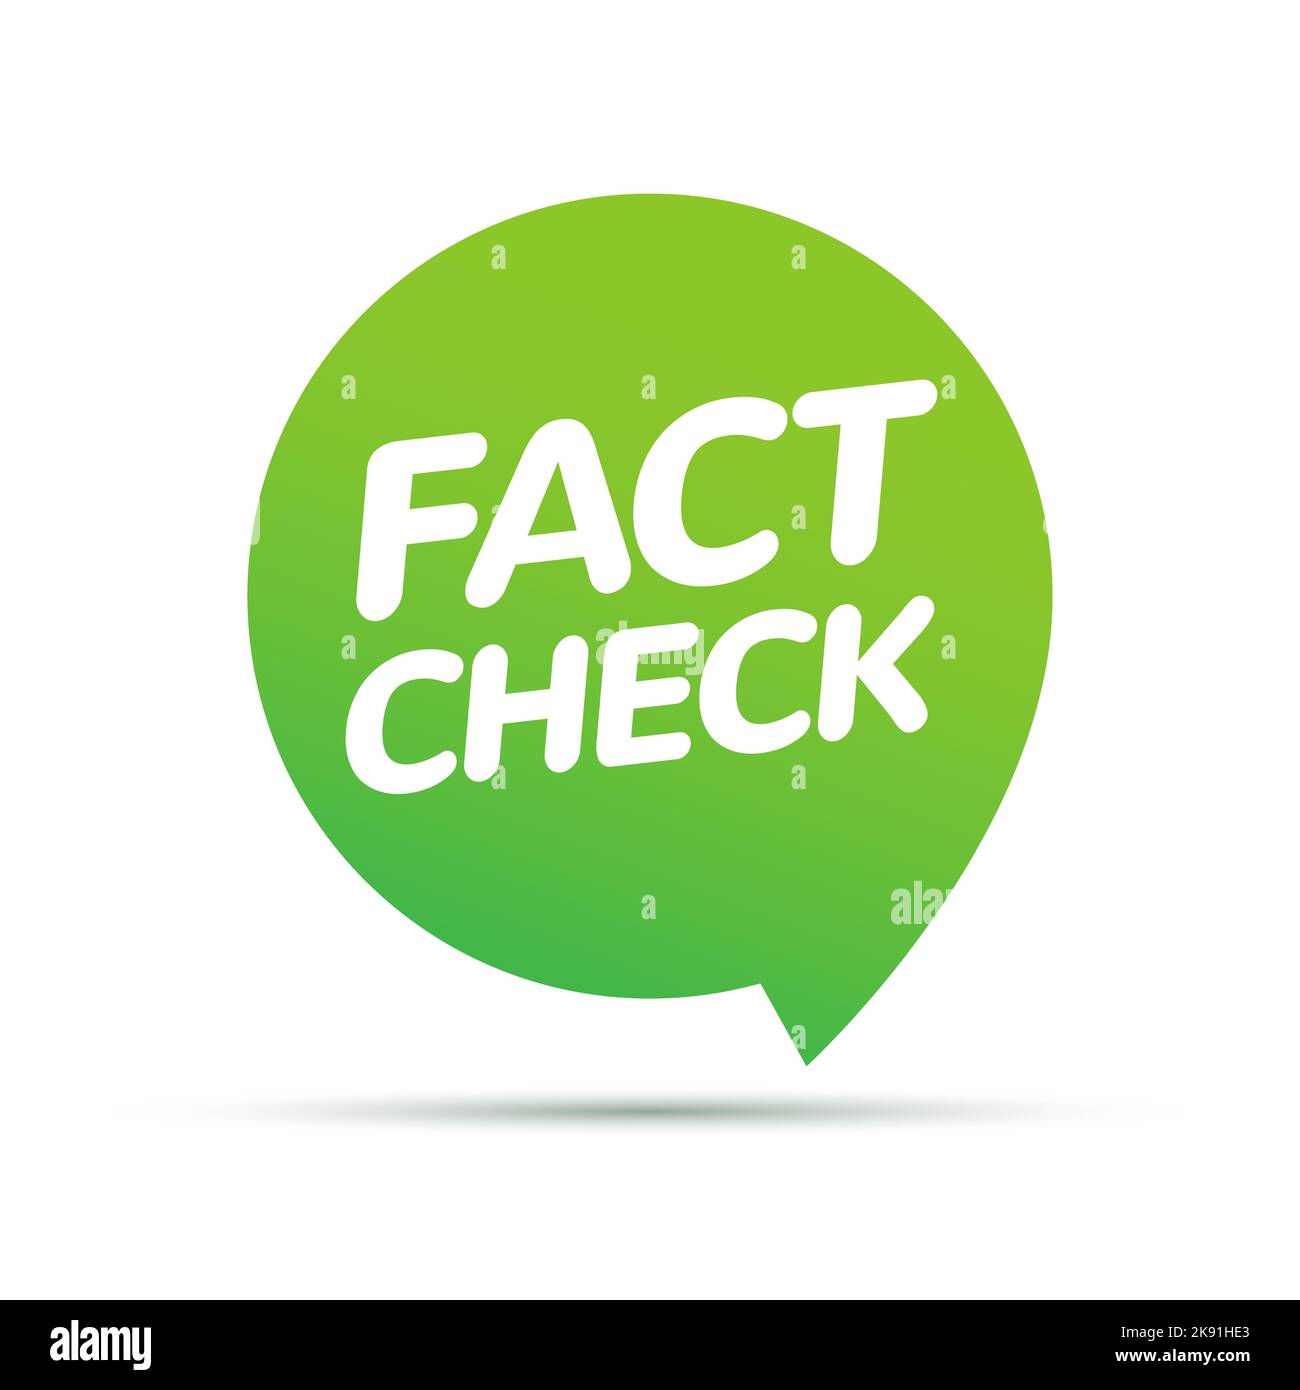 Fact check myth vs truth. True fact check vector icon concept Stock Vector